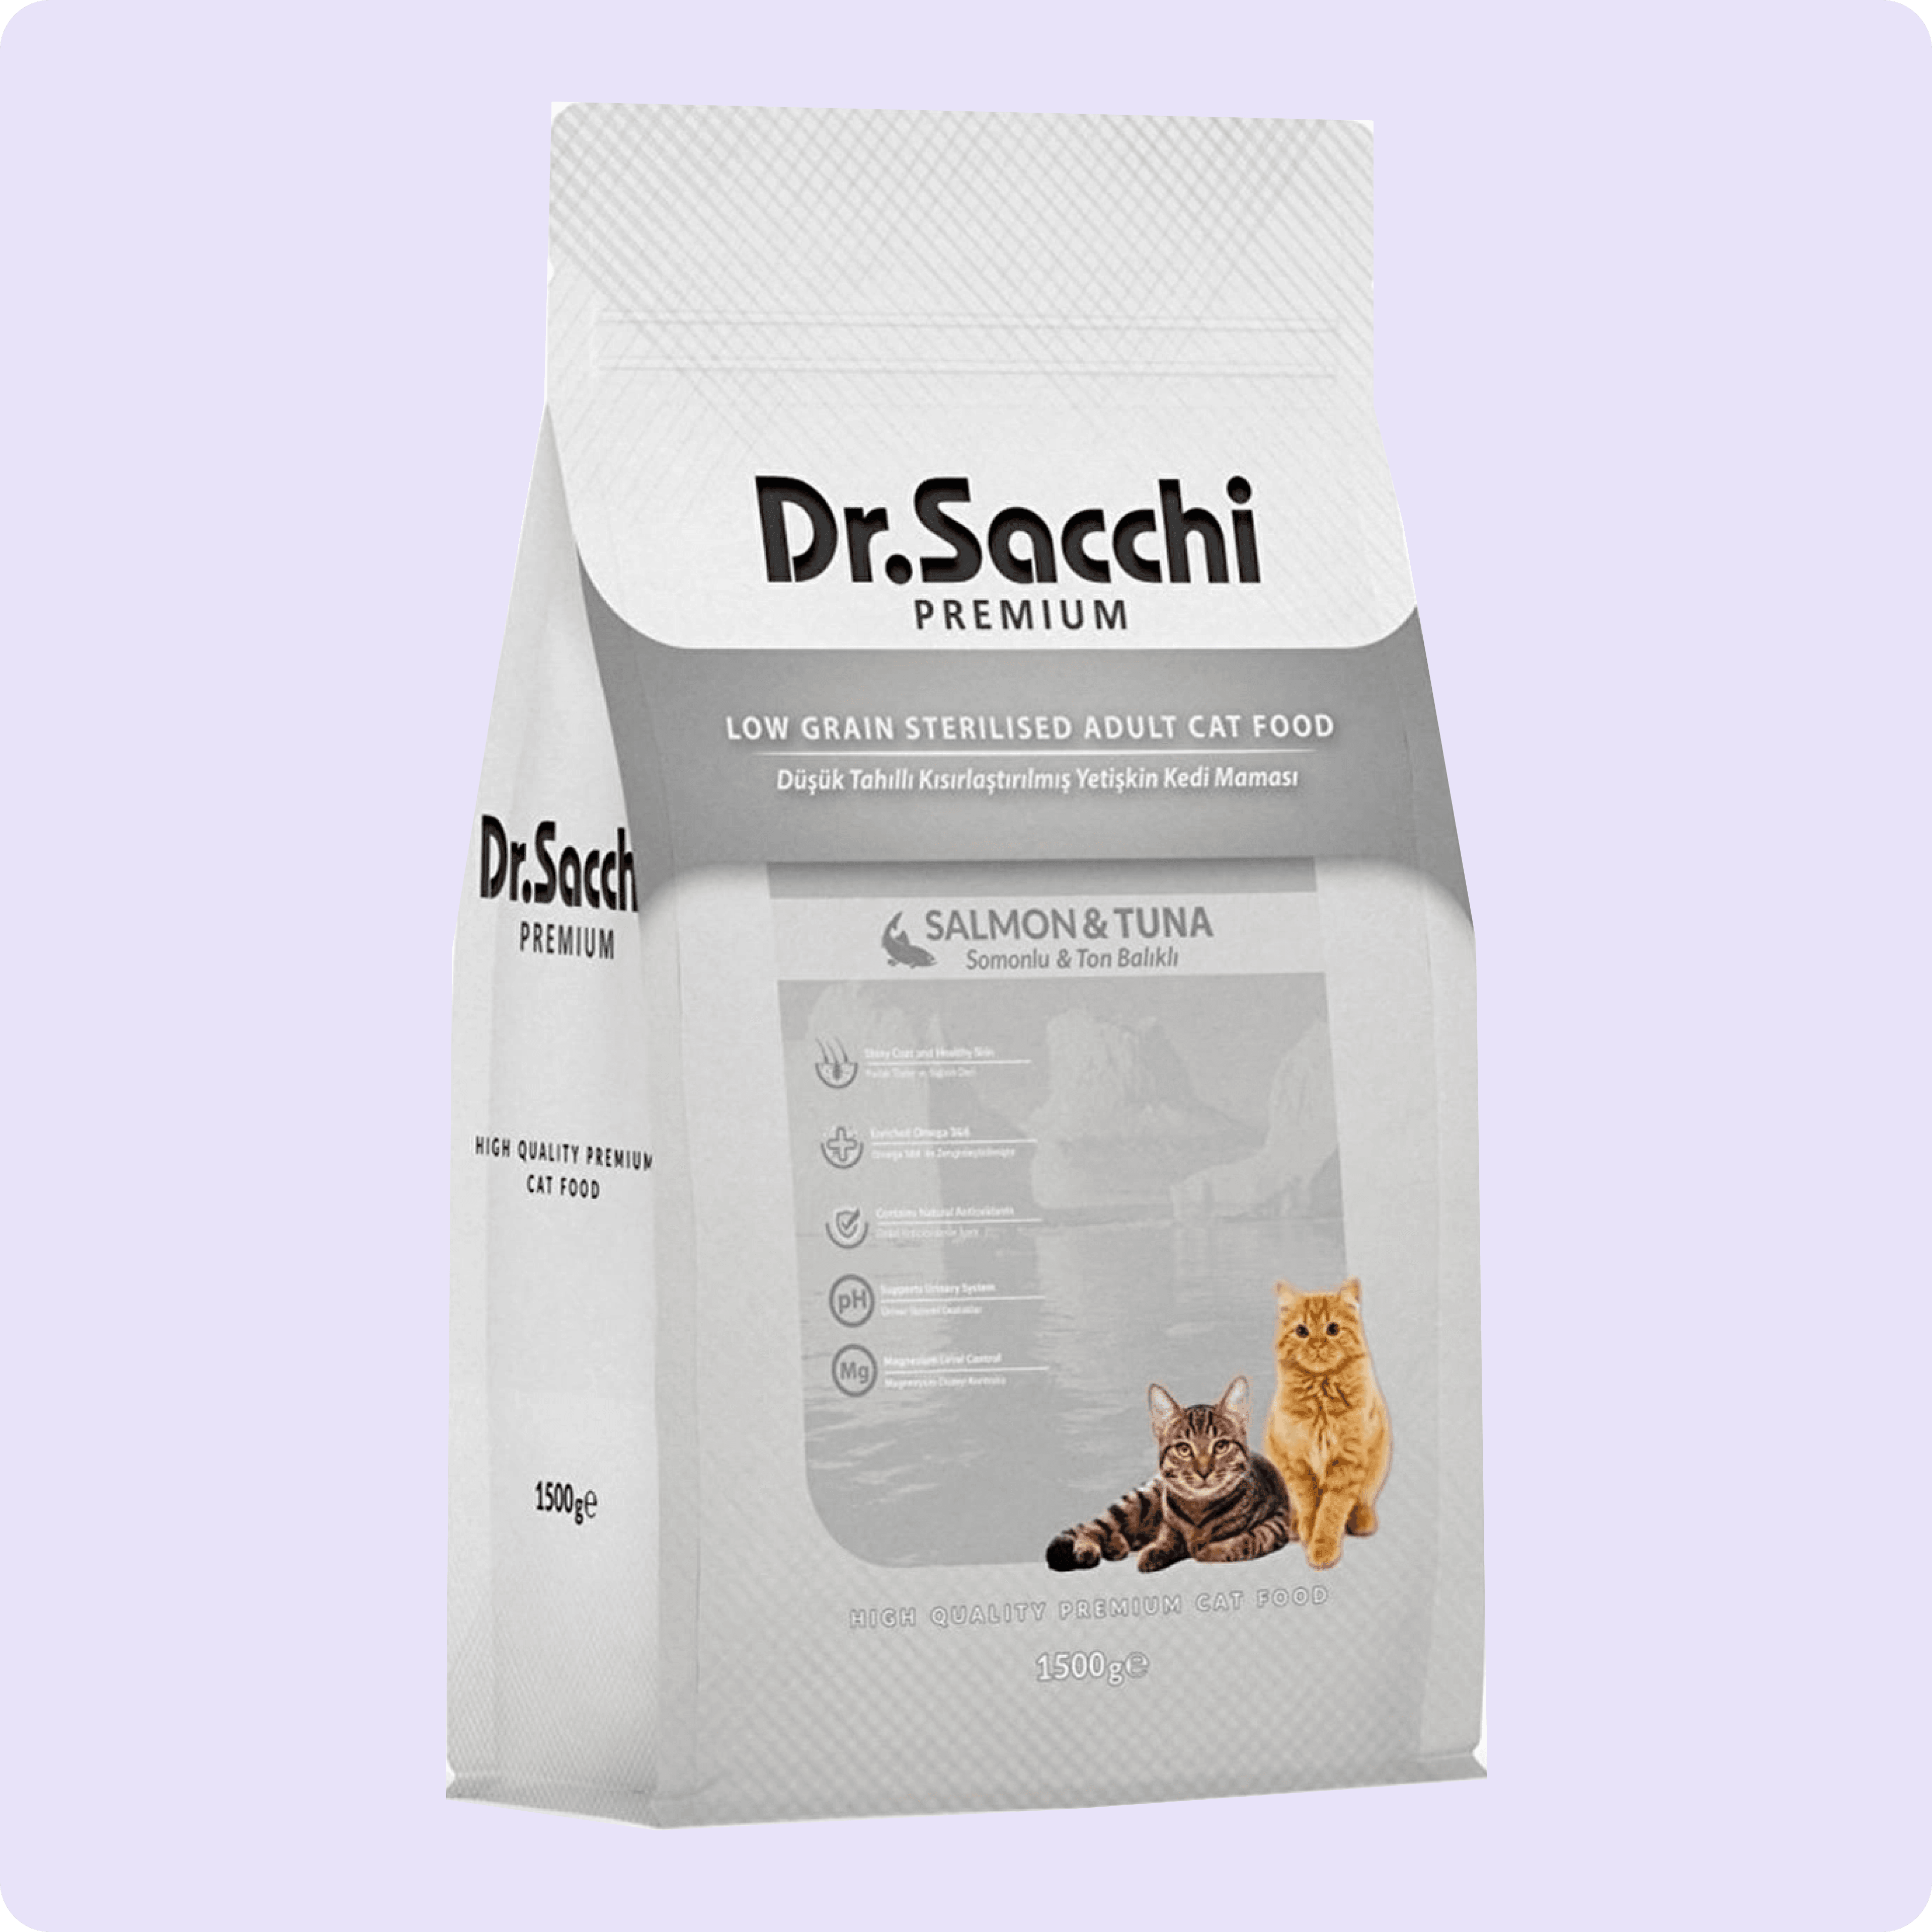 Dr. Sacchi Premium Somonlu ve Ton Balıklı Düşük Tahıllı Kısırlaştırılmış Kedi Maması 10 kg